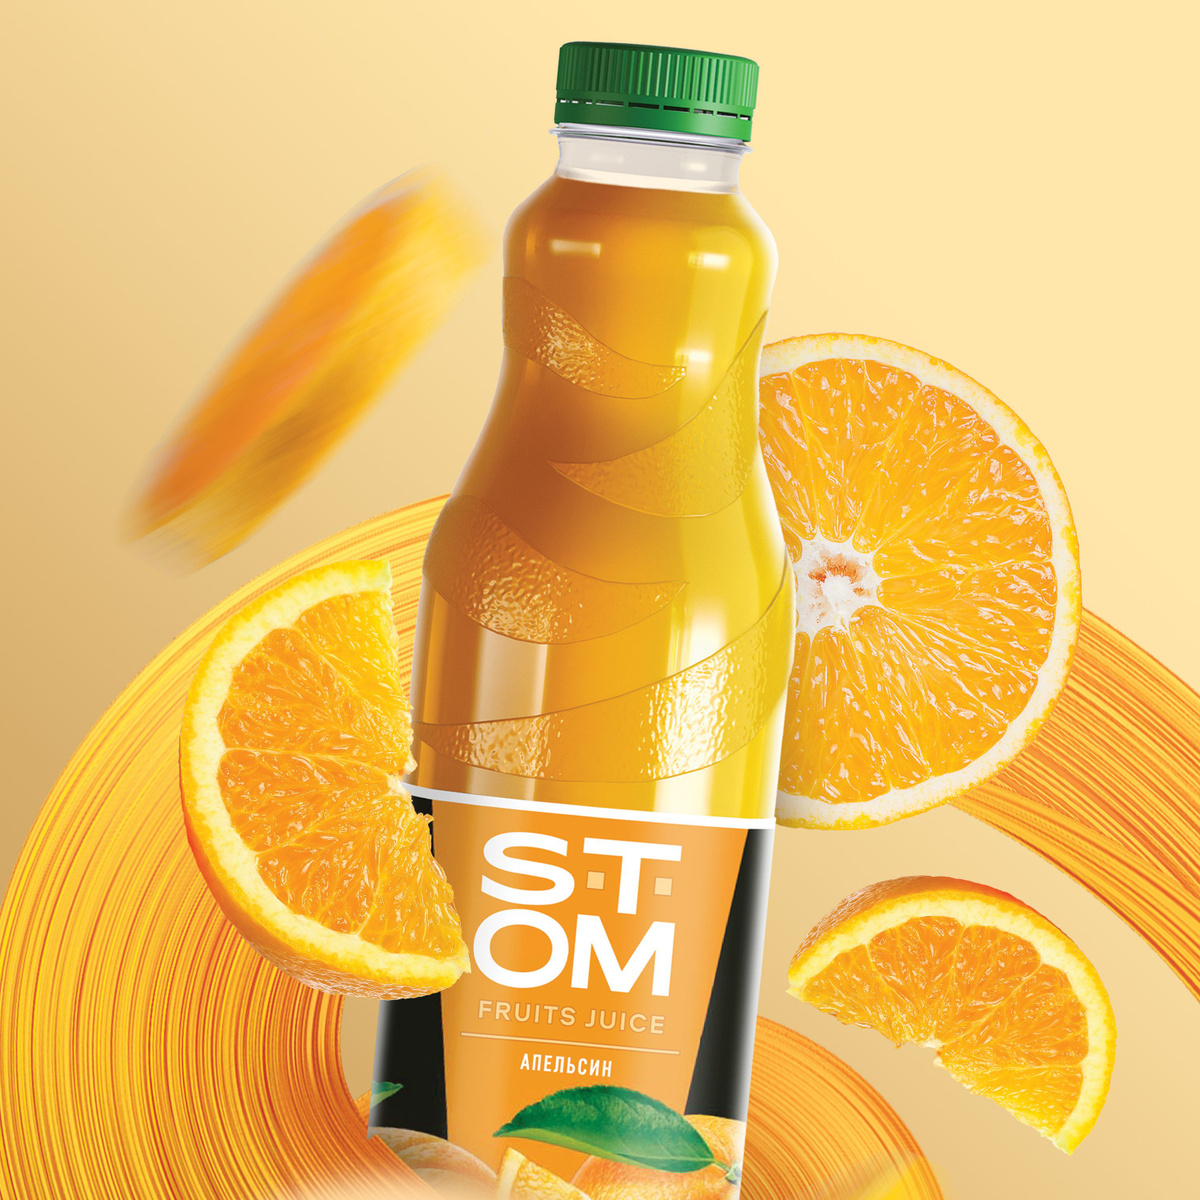 Апельсиновый cок STOM